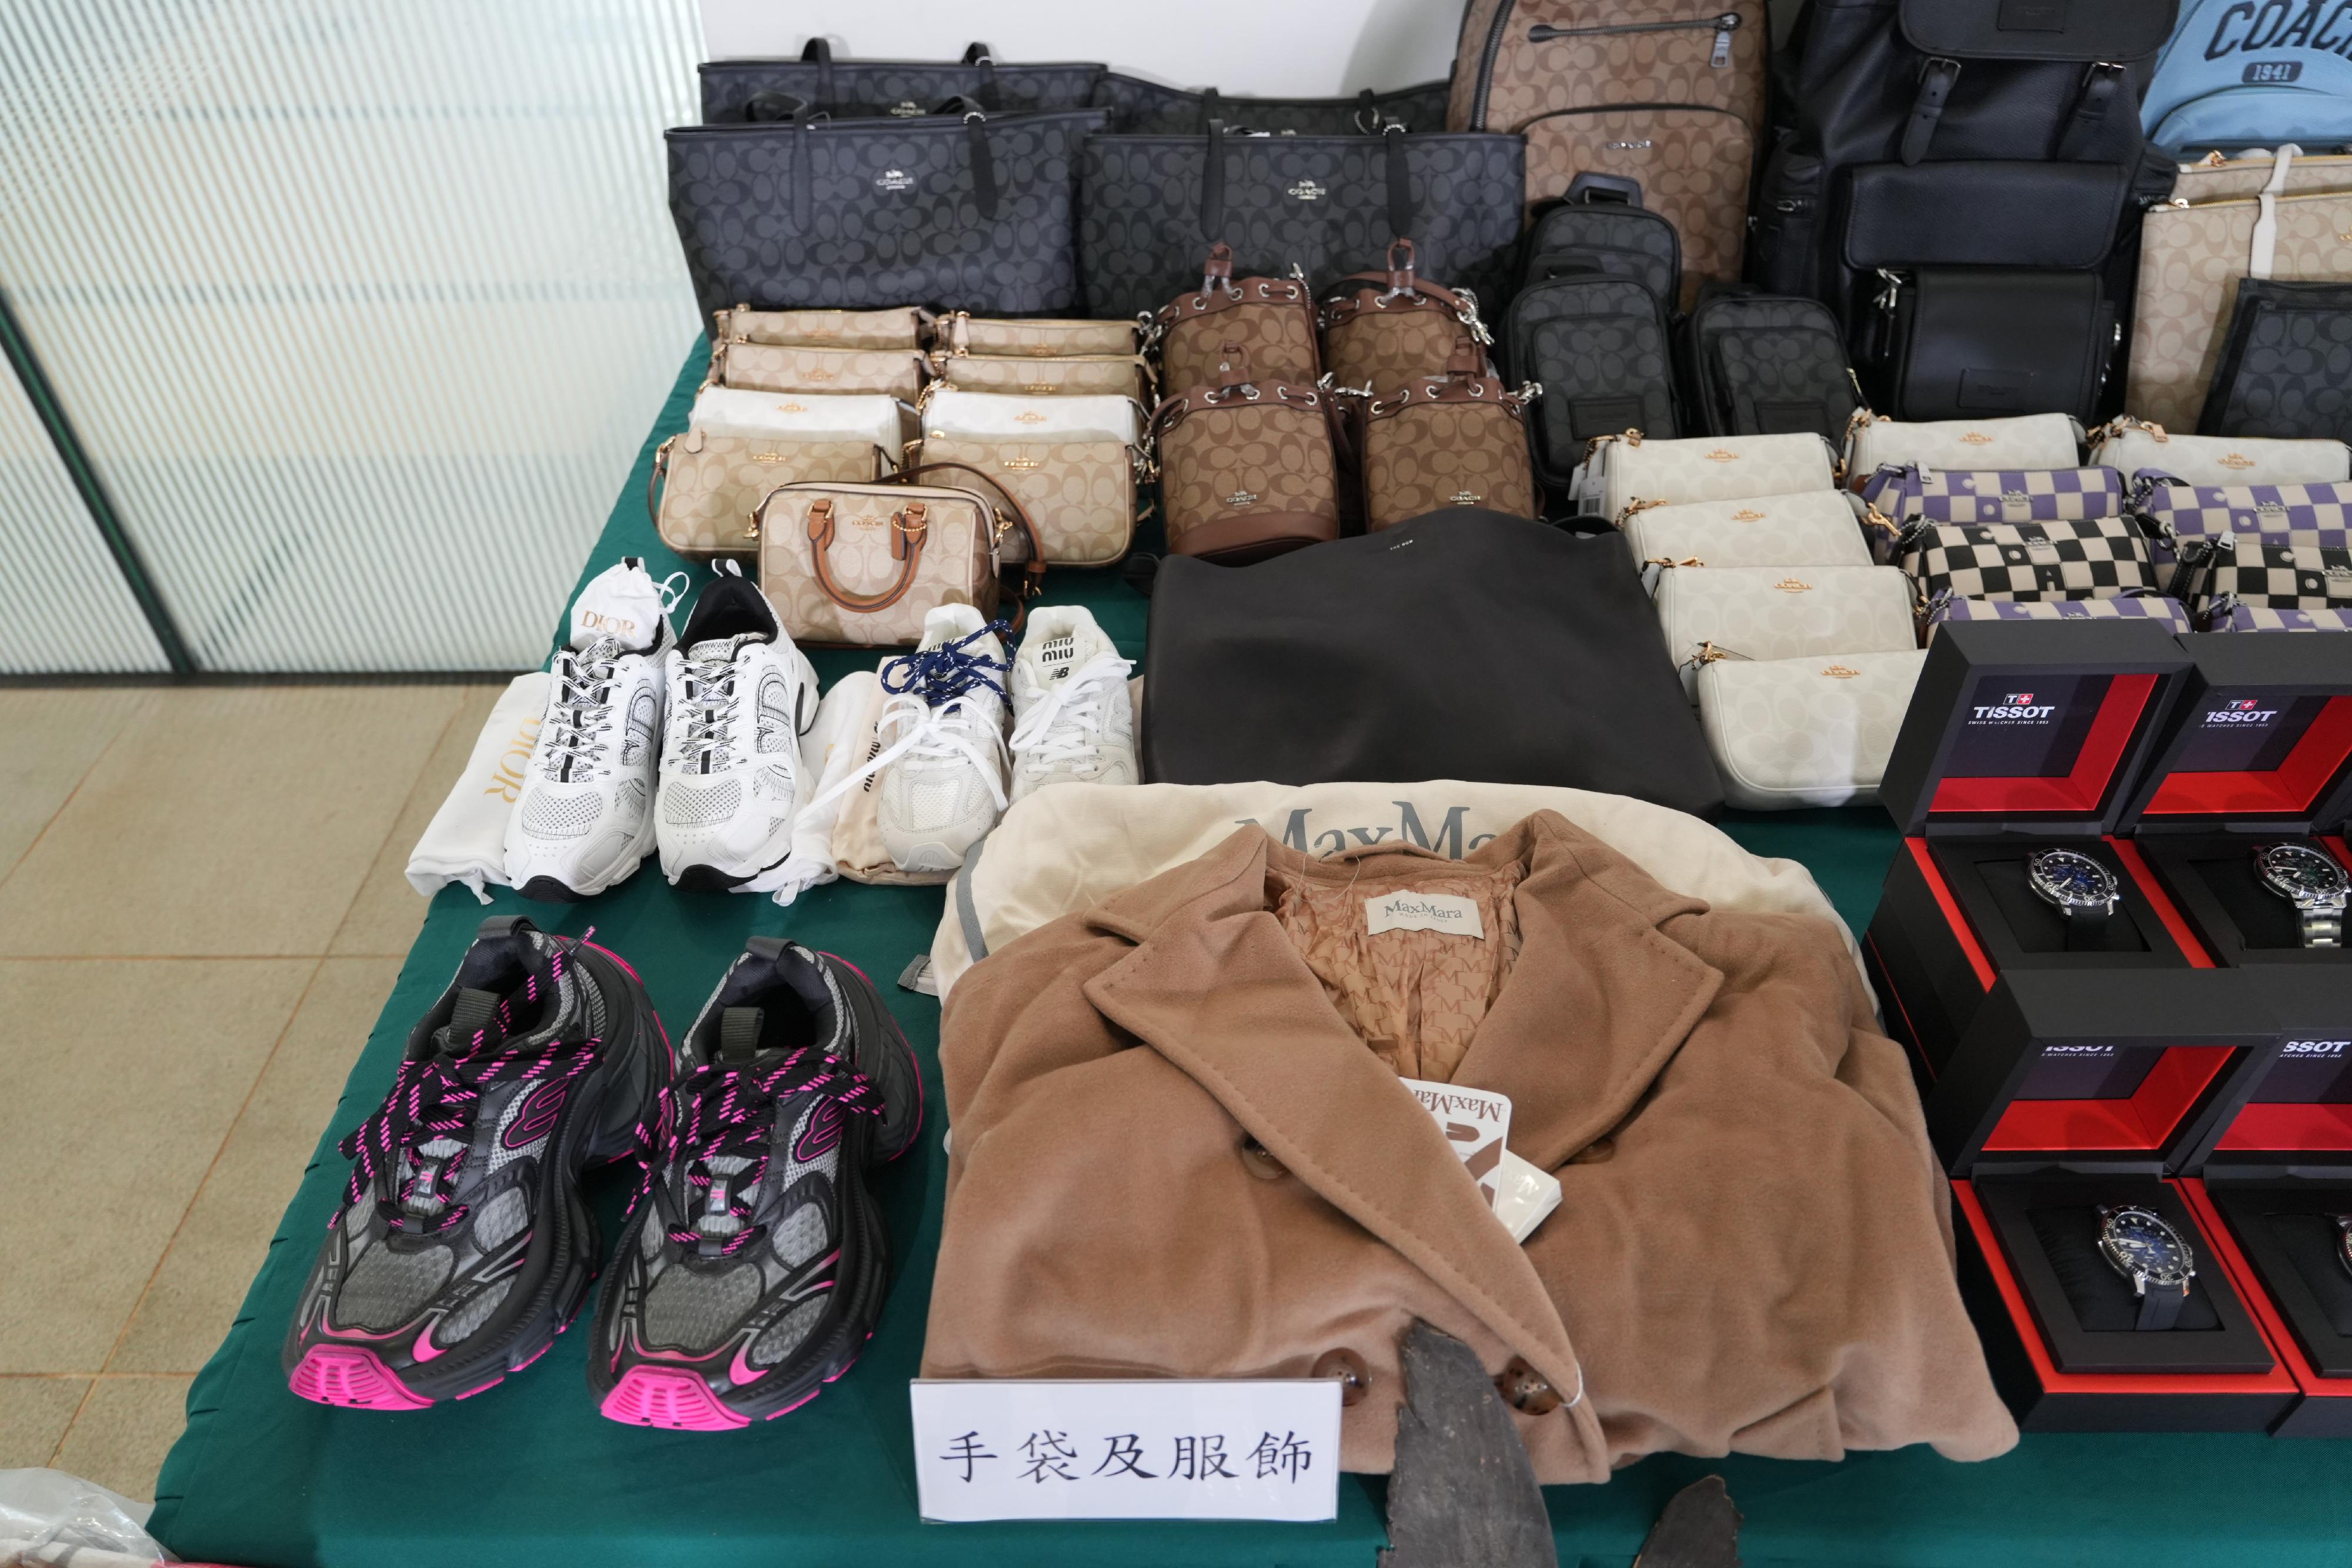 香港海关六月六日侦破一宗涉嫌利用内河船走私的案件，检获大批怀疑走私货物，估计市值共约一千万元。图示部分检获的怀疑走私手袋及衣物。